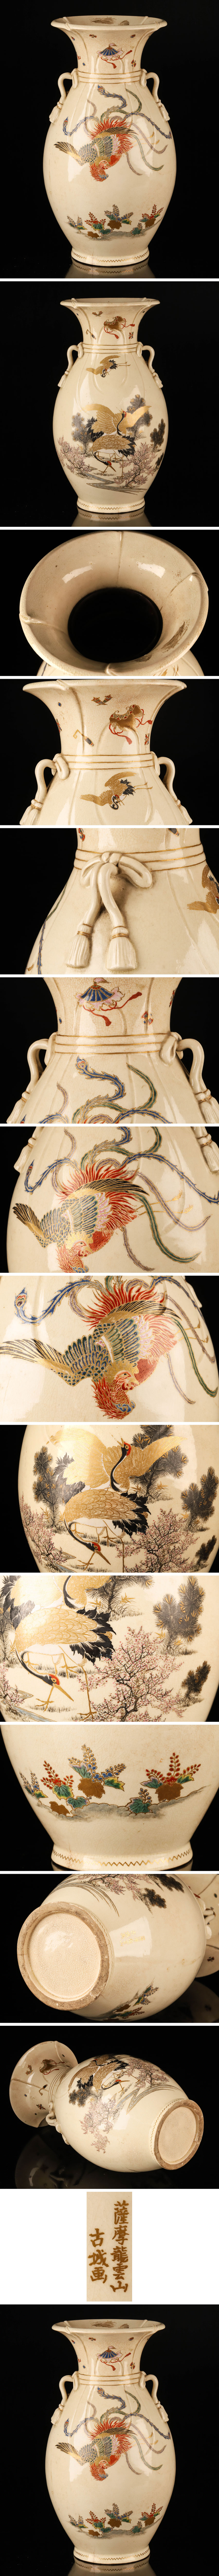 直販本物薩摩焼 薩摩龍雲山 古城画 色絵金彩鳳凰図花瓶 KI438 薩摩